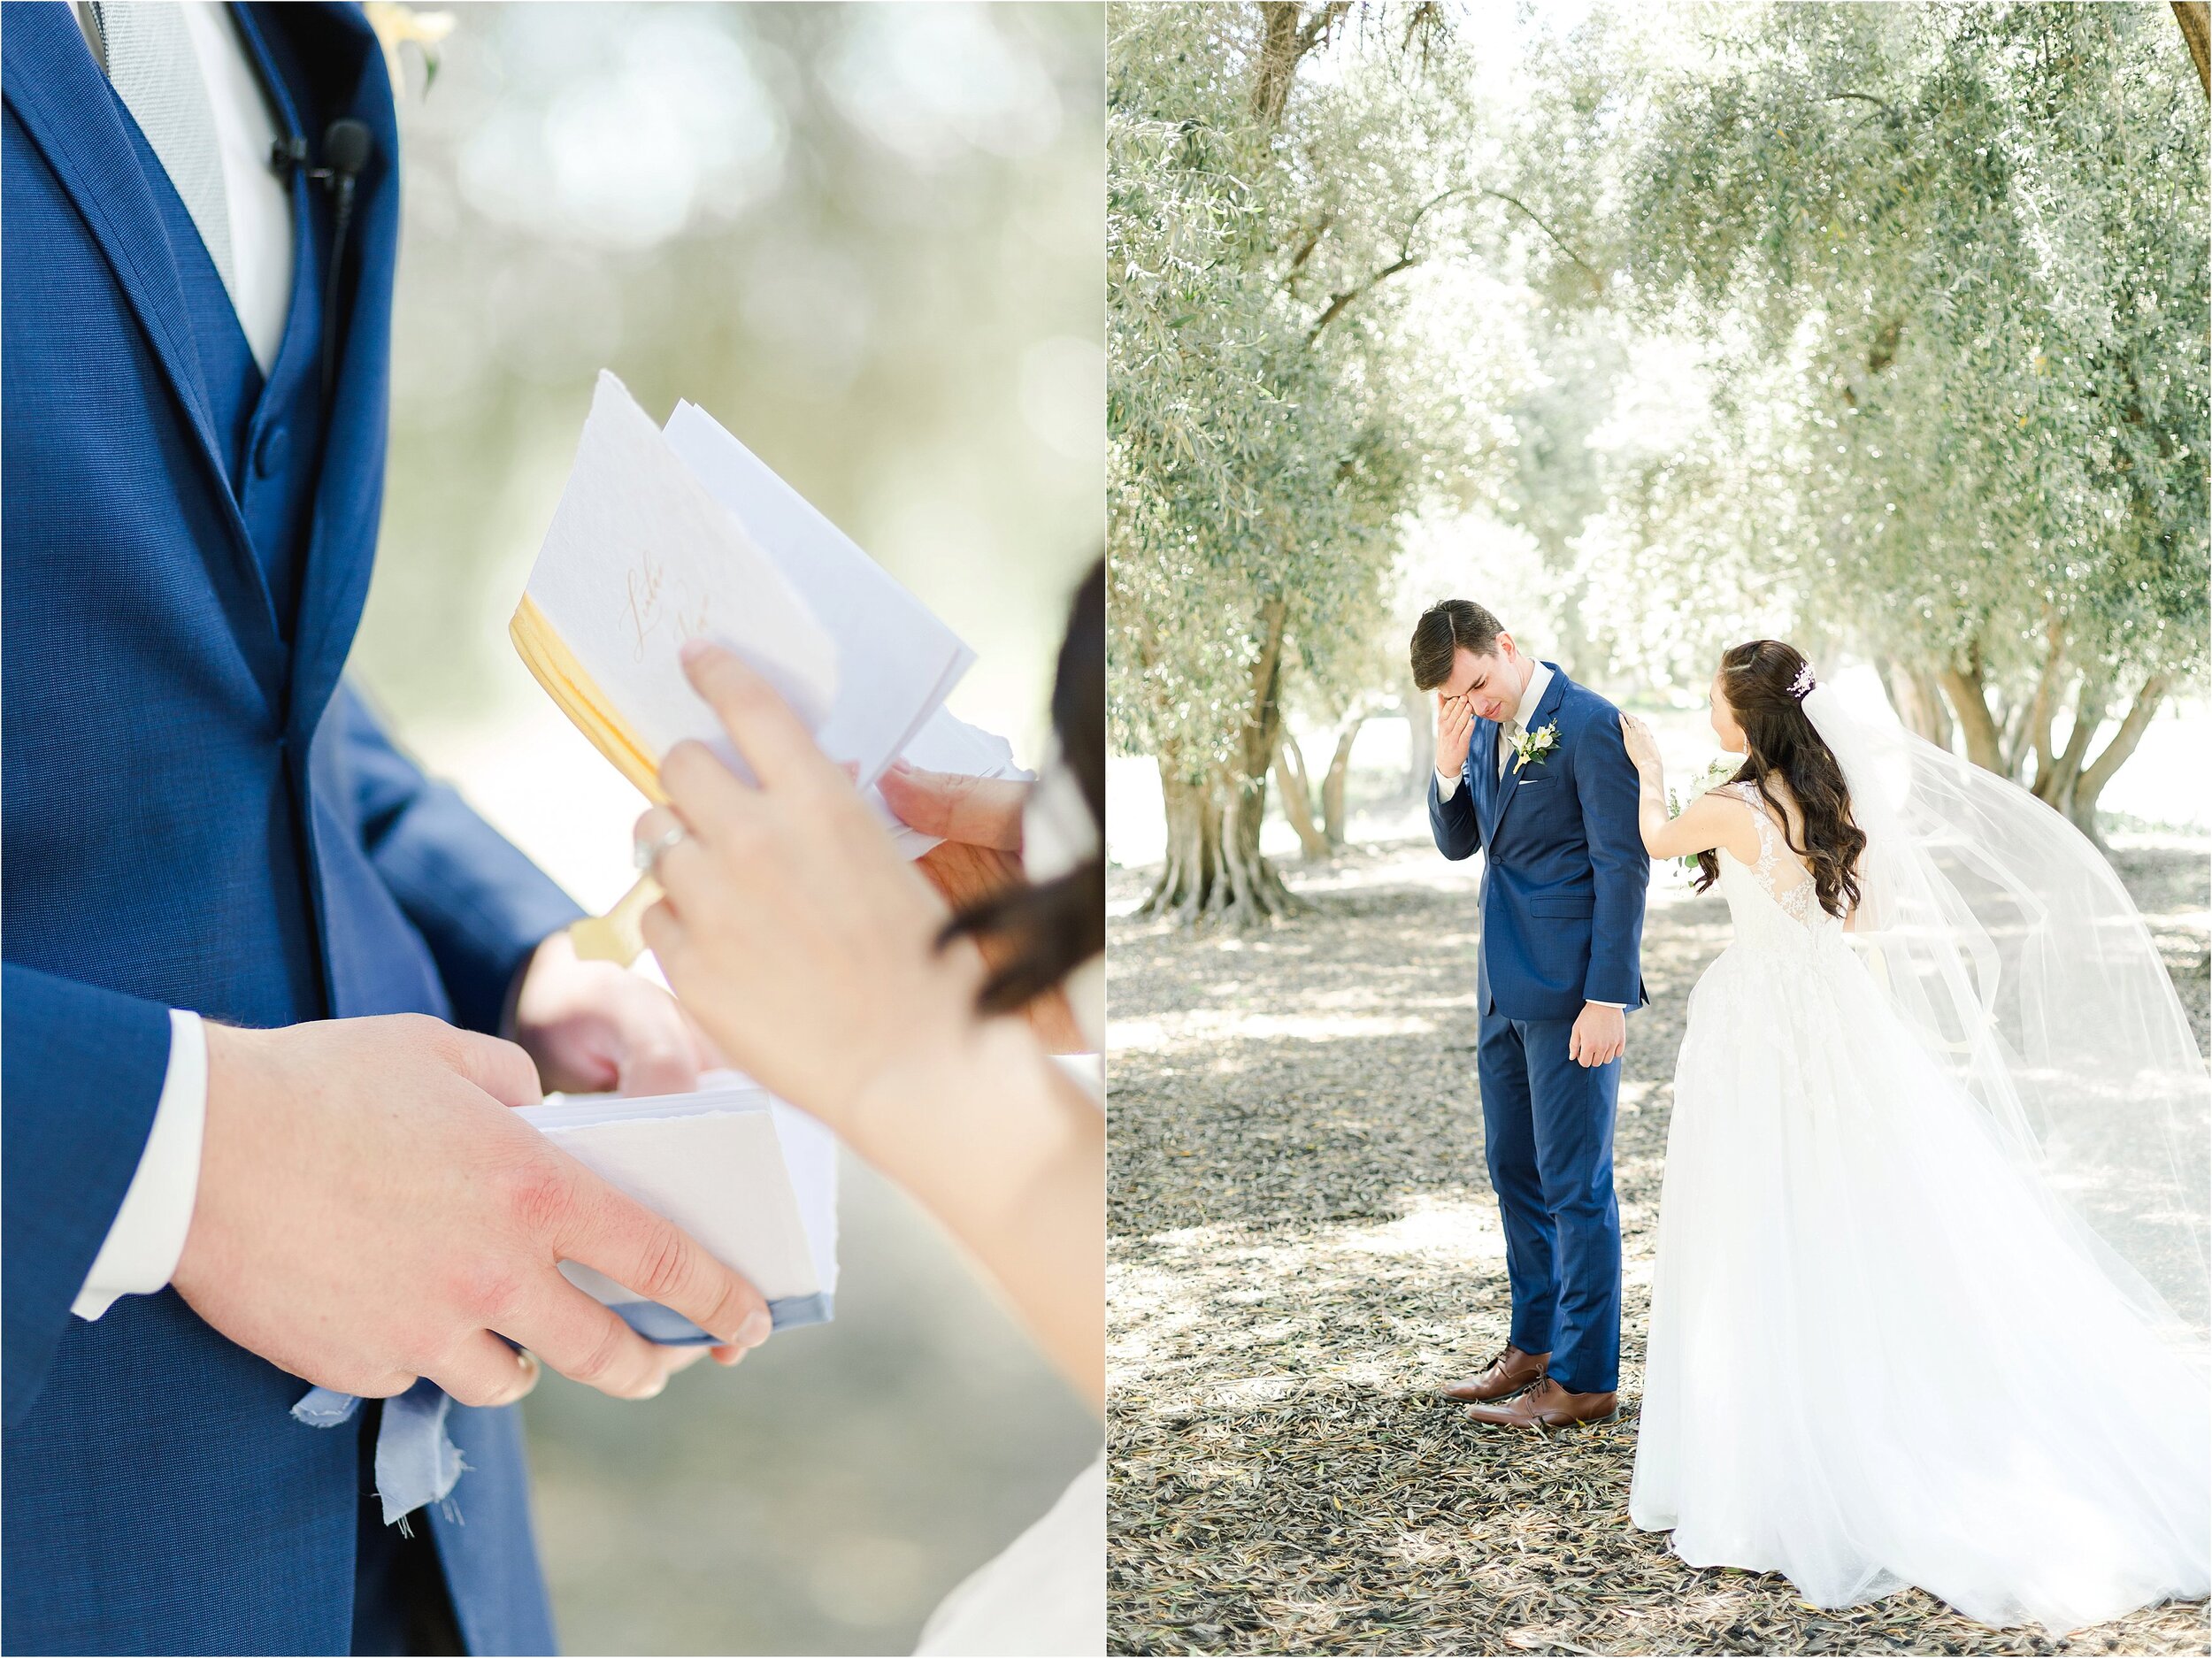 Hand Written Wedding Vows